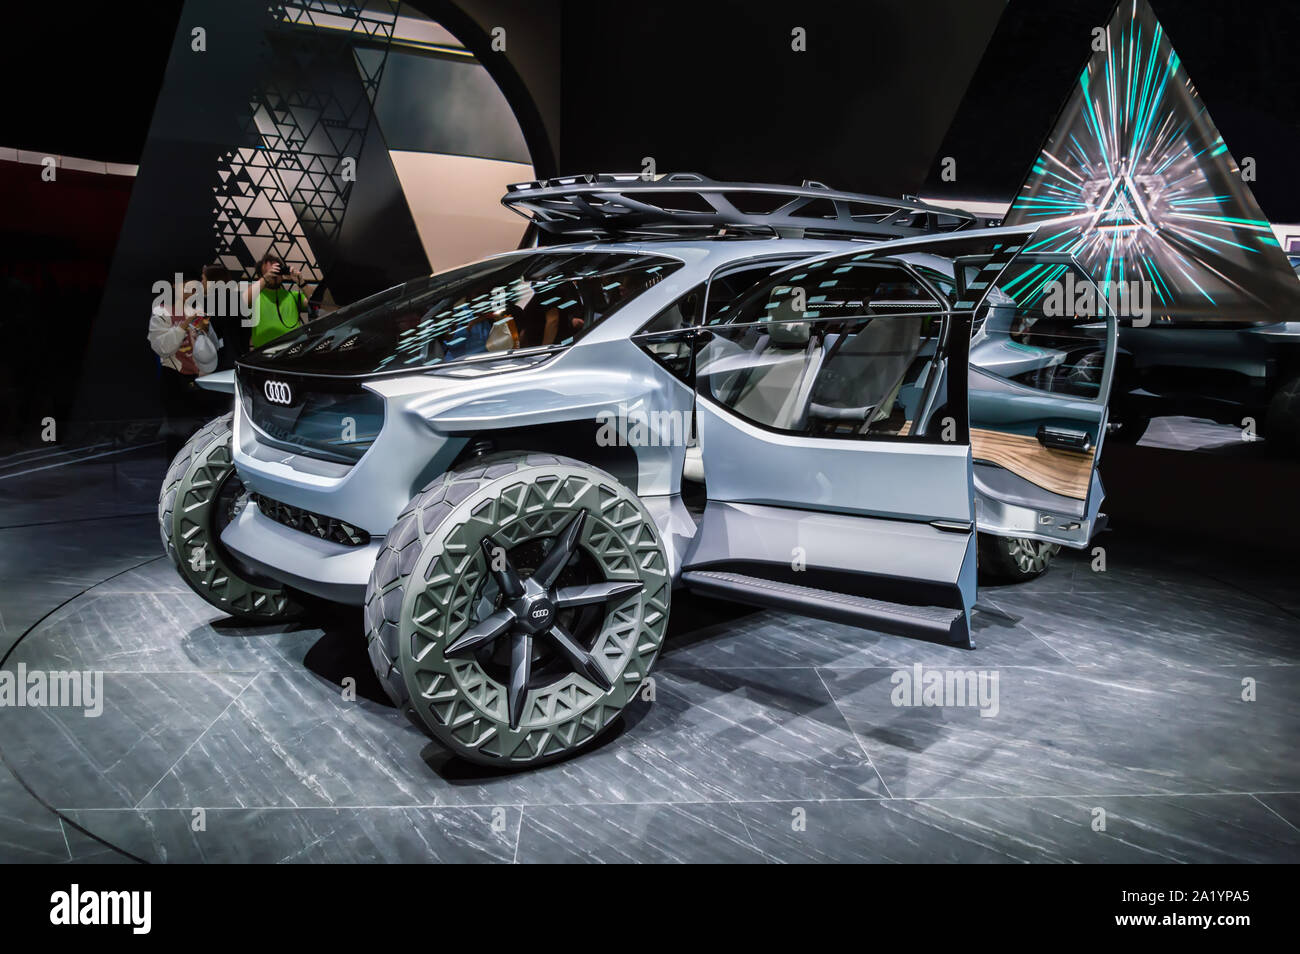 FRANKFURT - SEP 15, 2019: New Audi Aicon or AI:TRAIL autonomous concept car at IAA 2019 Frankfurt Motor Show. Electric futuristic off-road vehicle Stock Photo